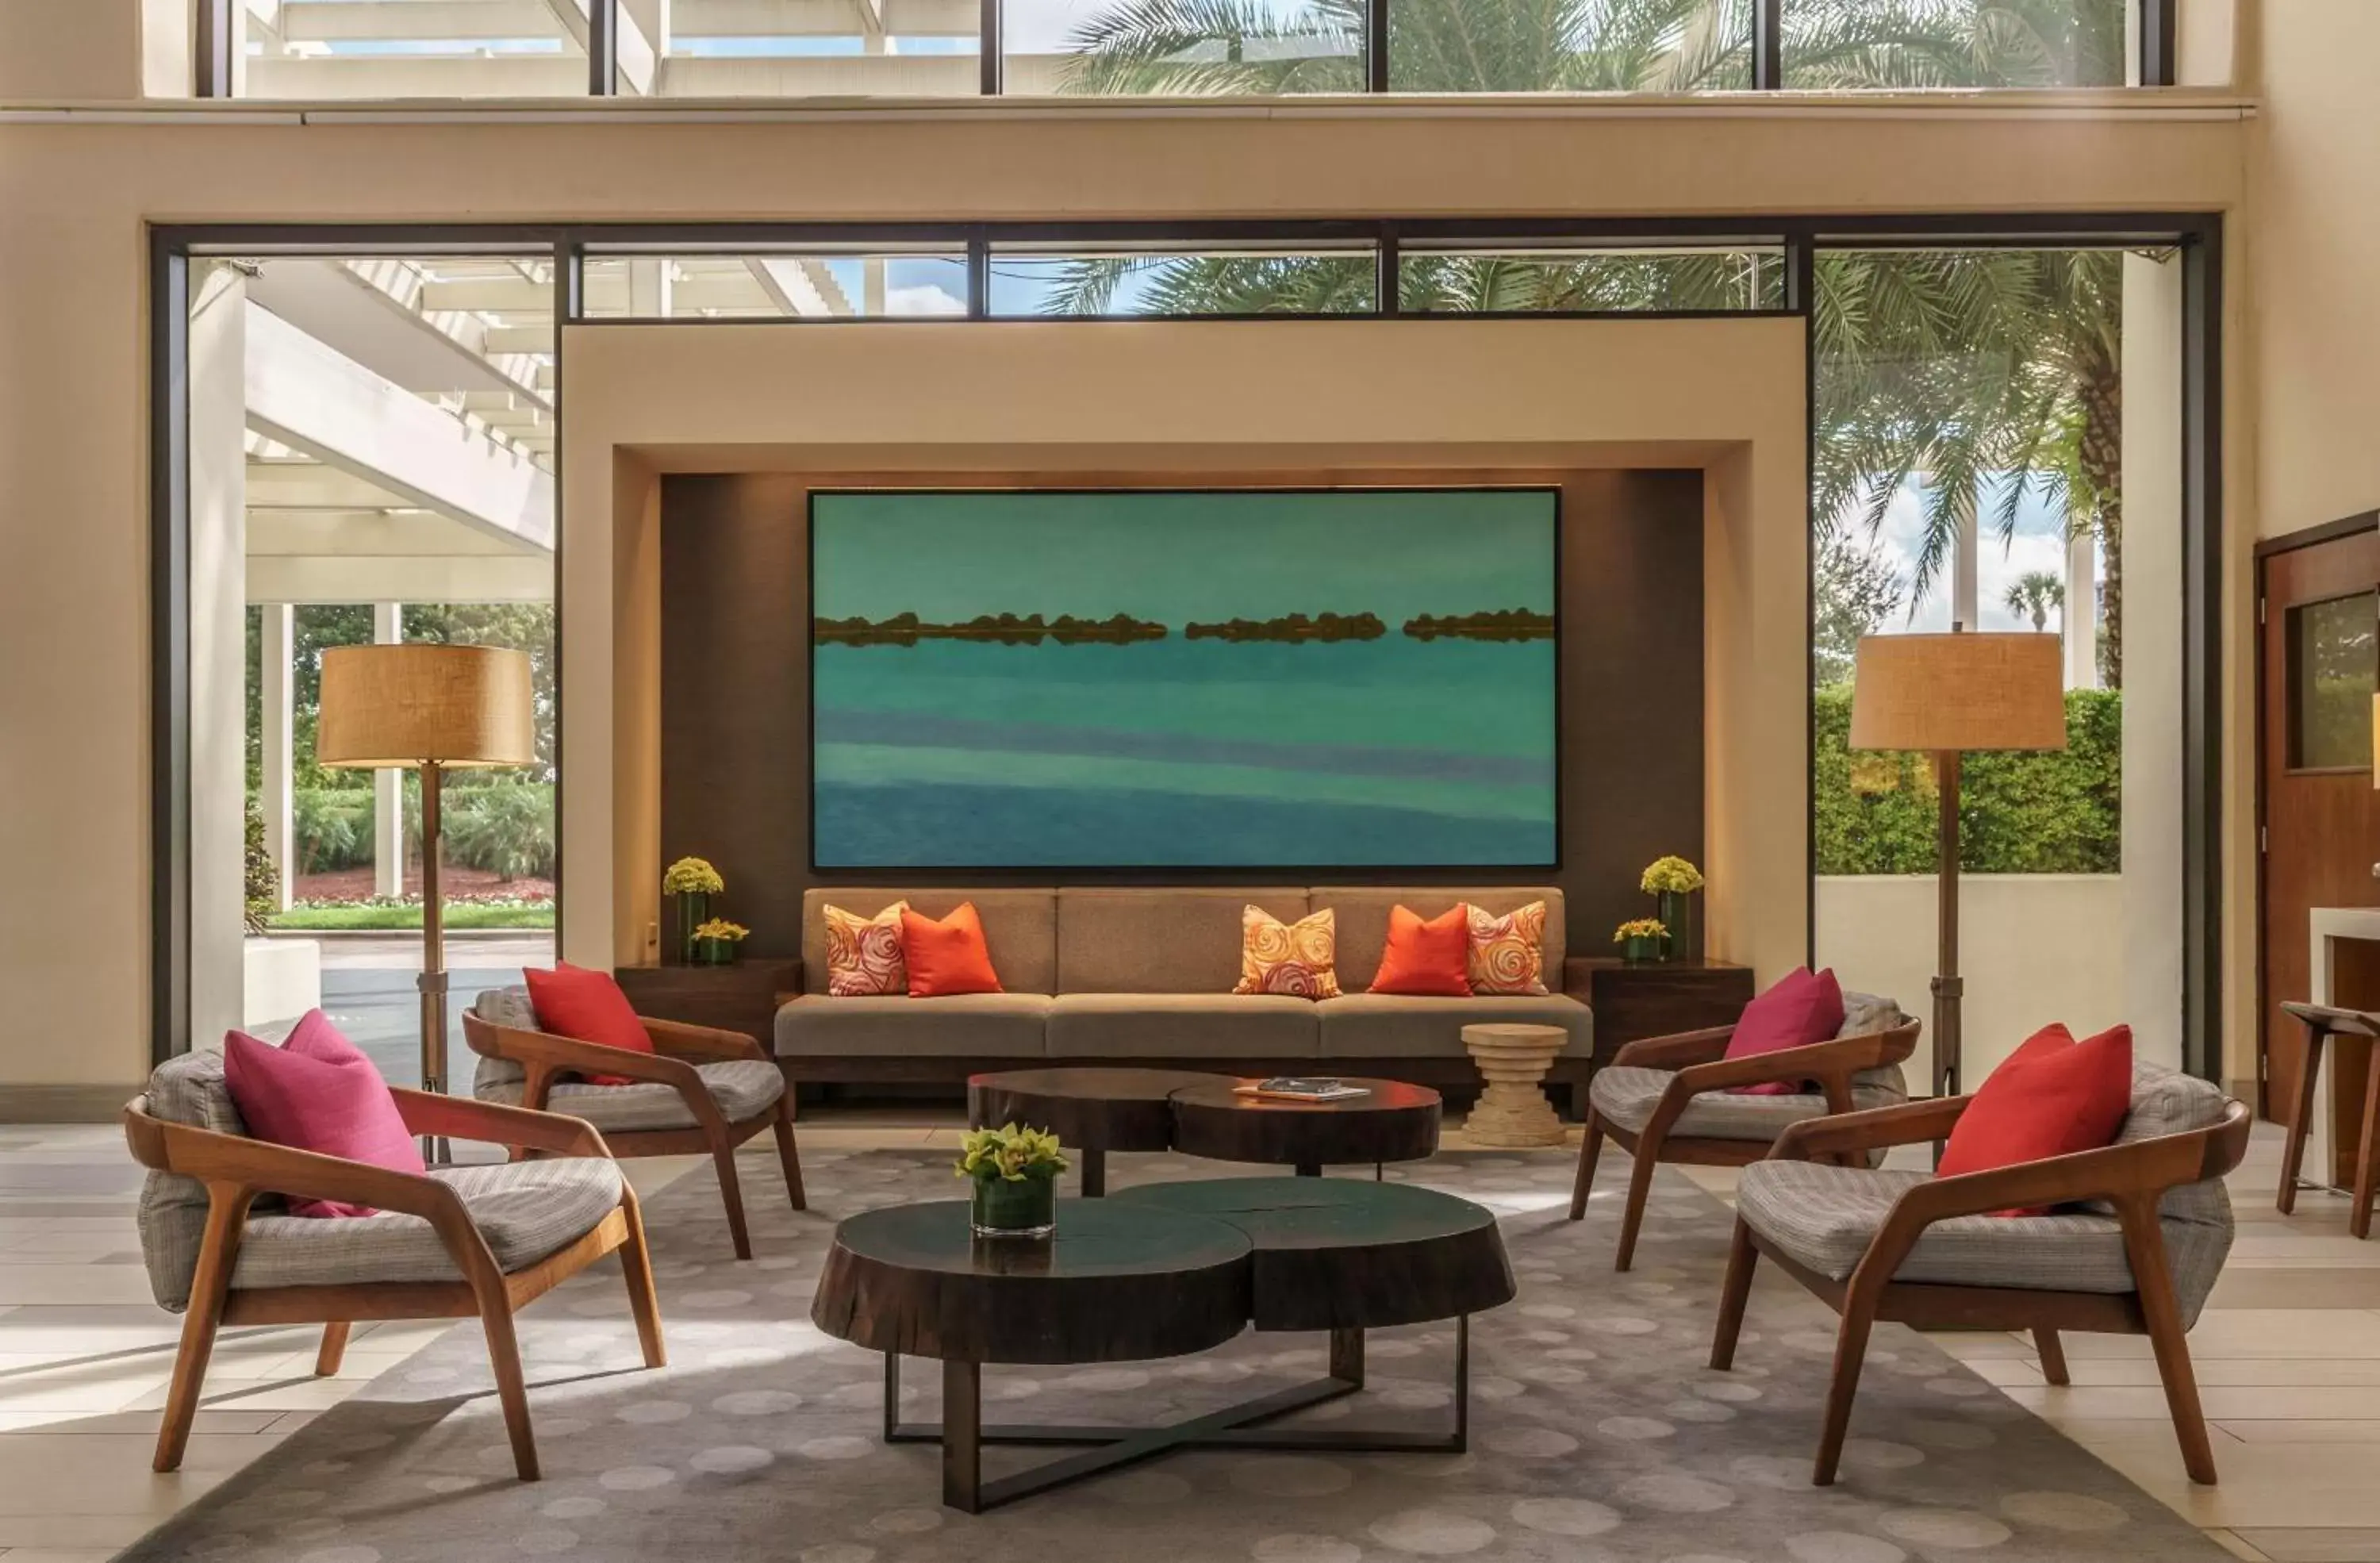 Lobby or reception in Hyatt Regency Grand Cypress Resort